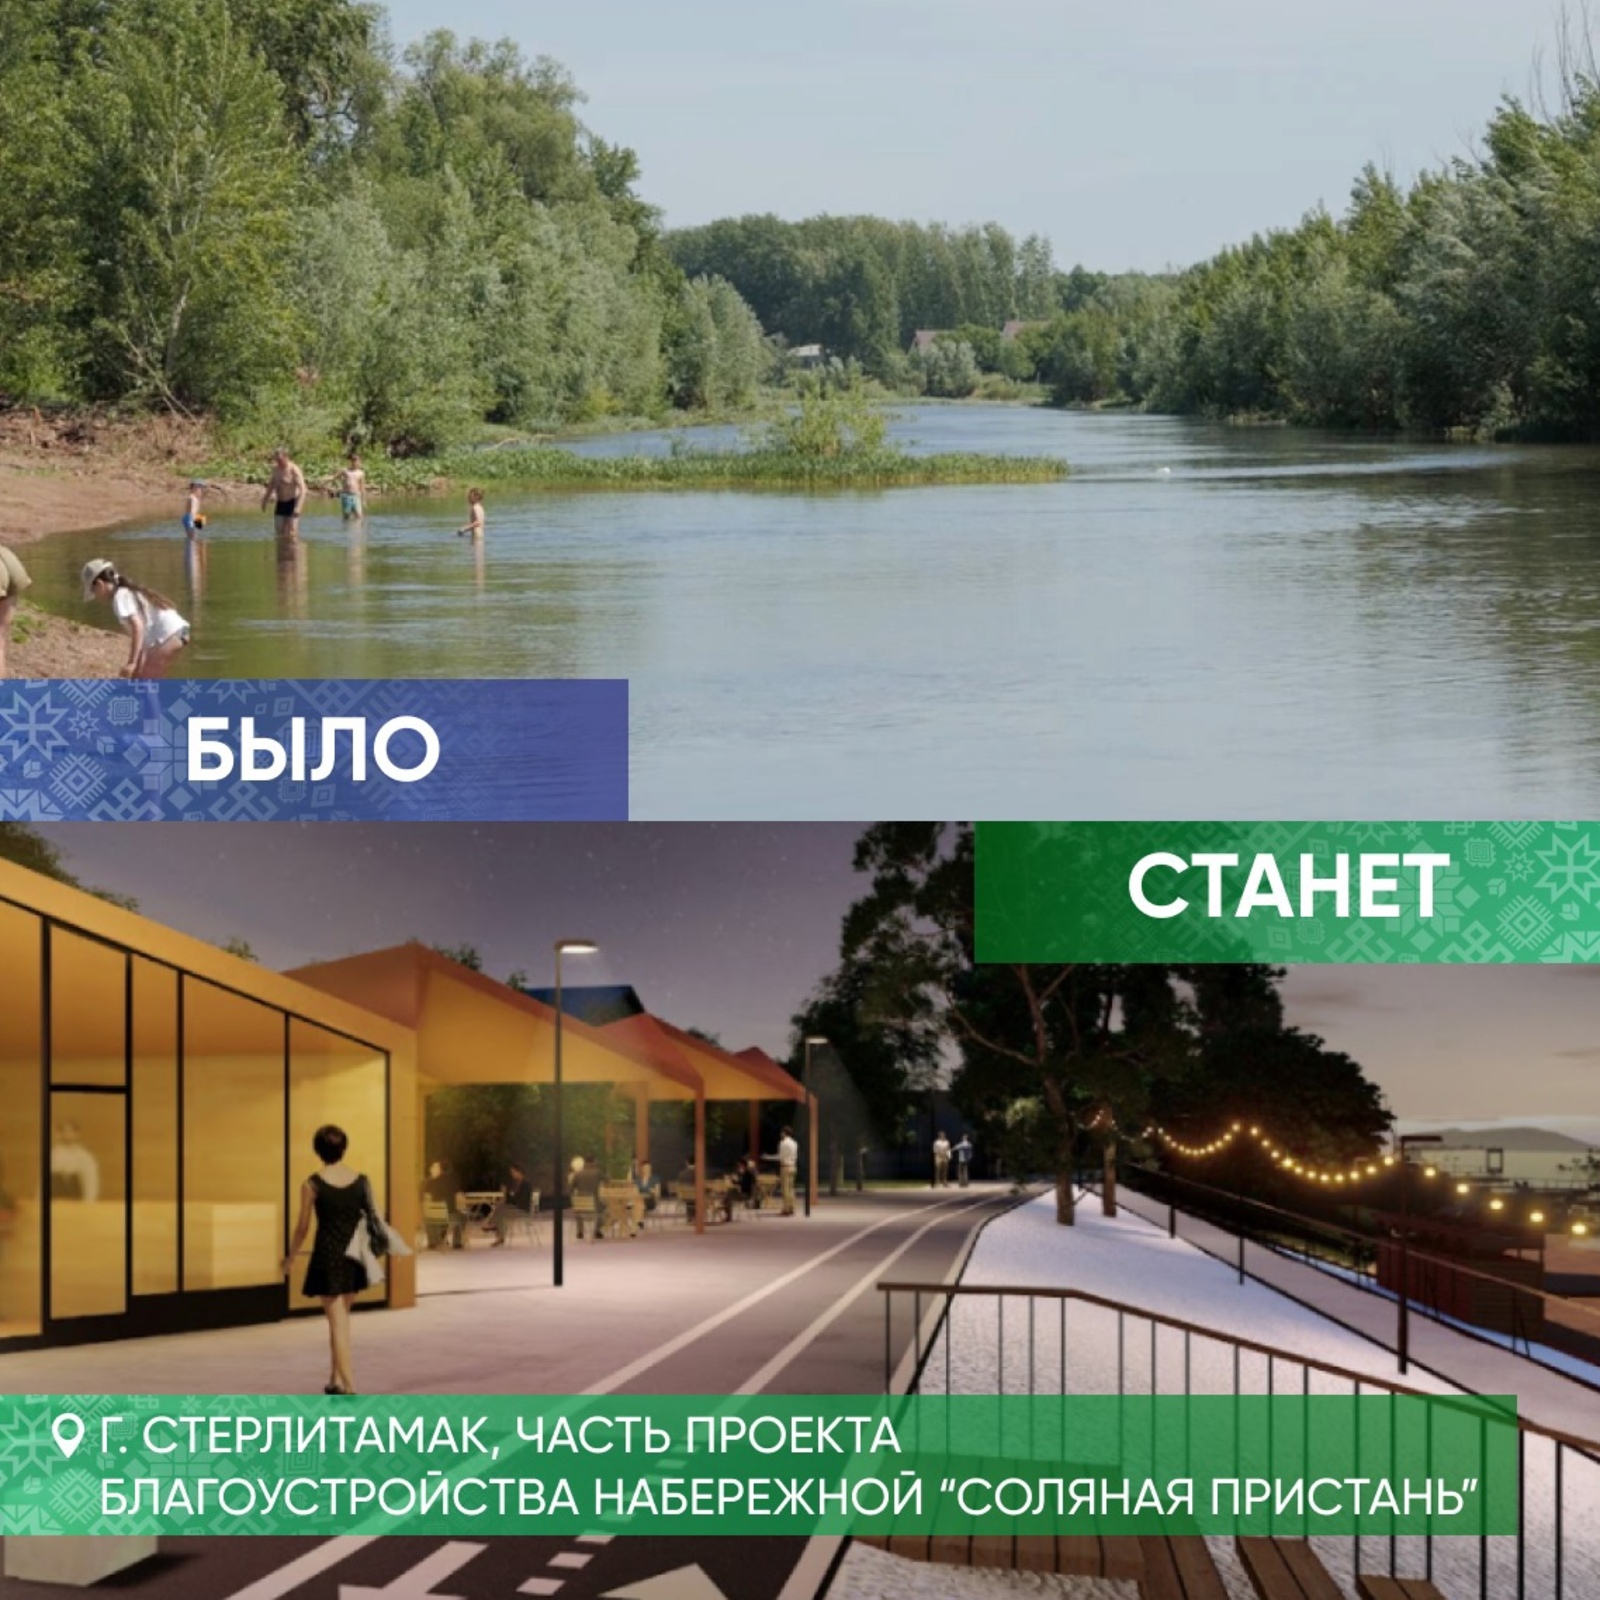 Шесть городов Башкирии победили в конкурсе по формированию комфортной городской среды